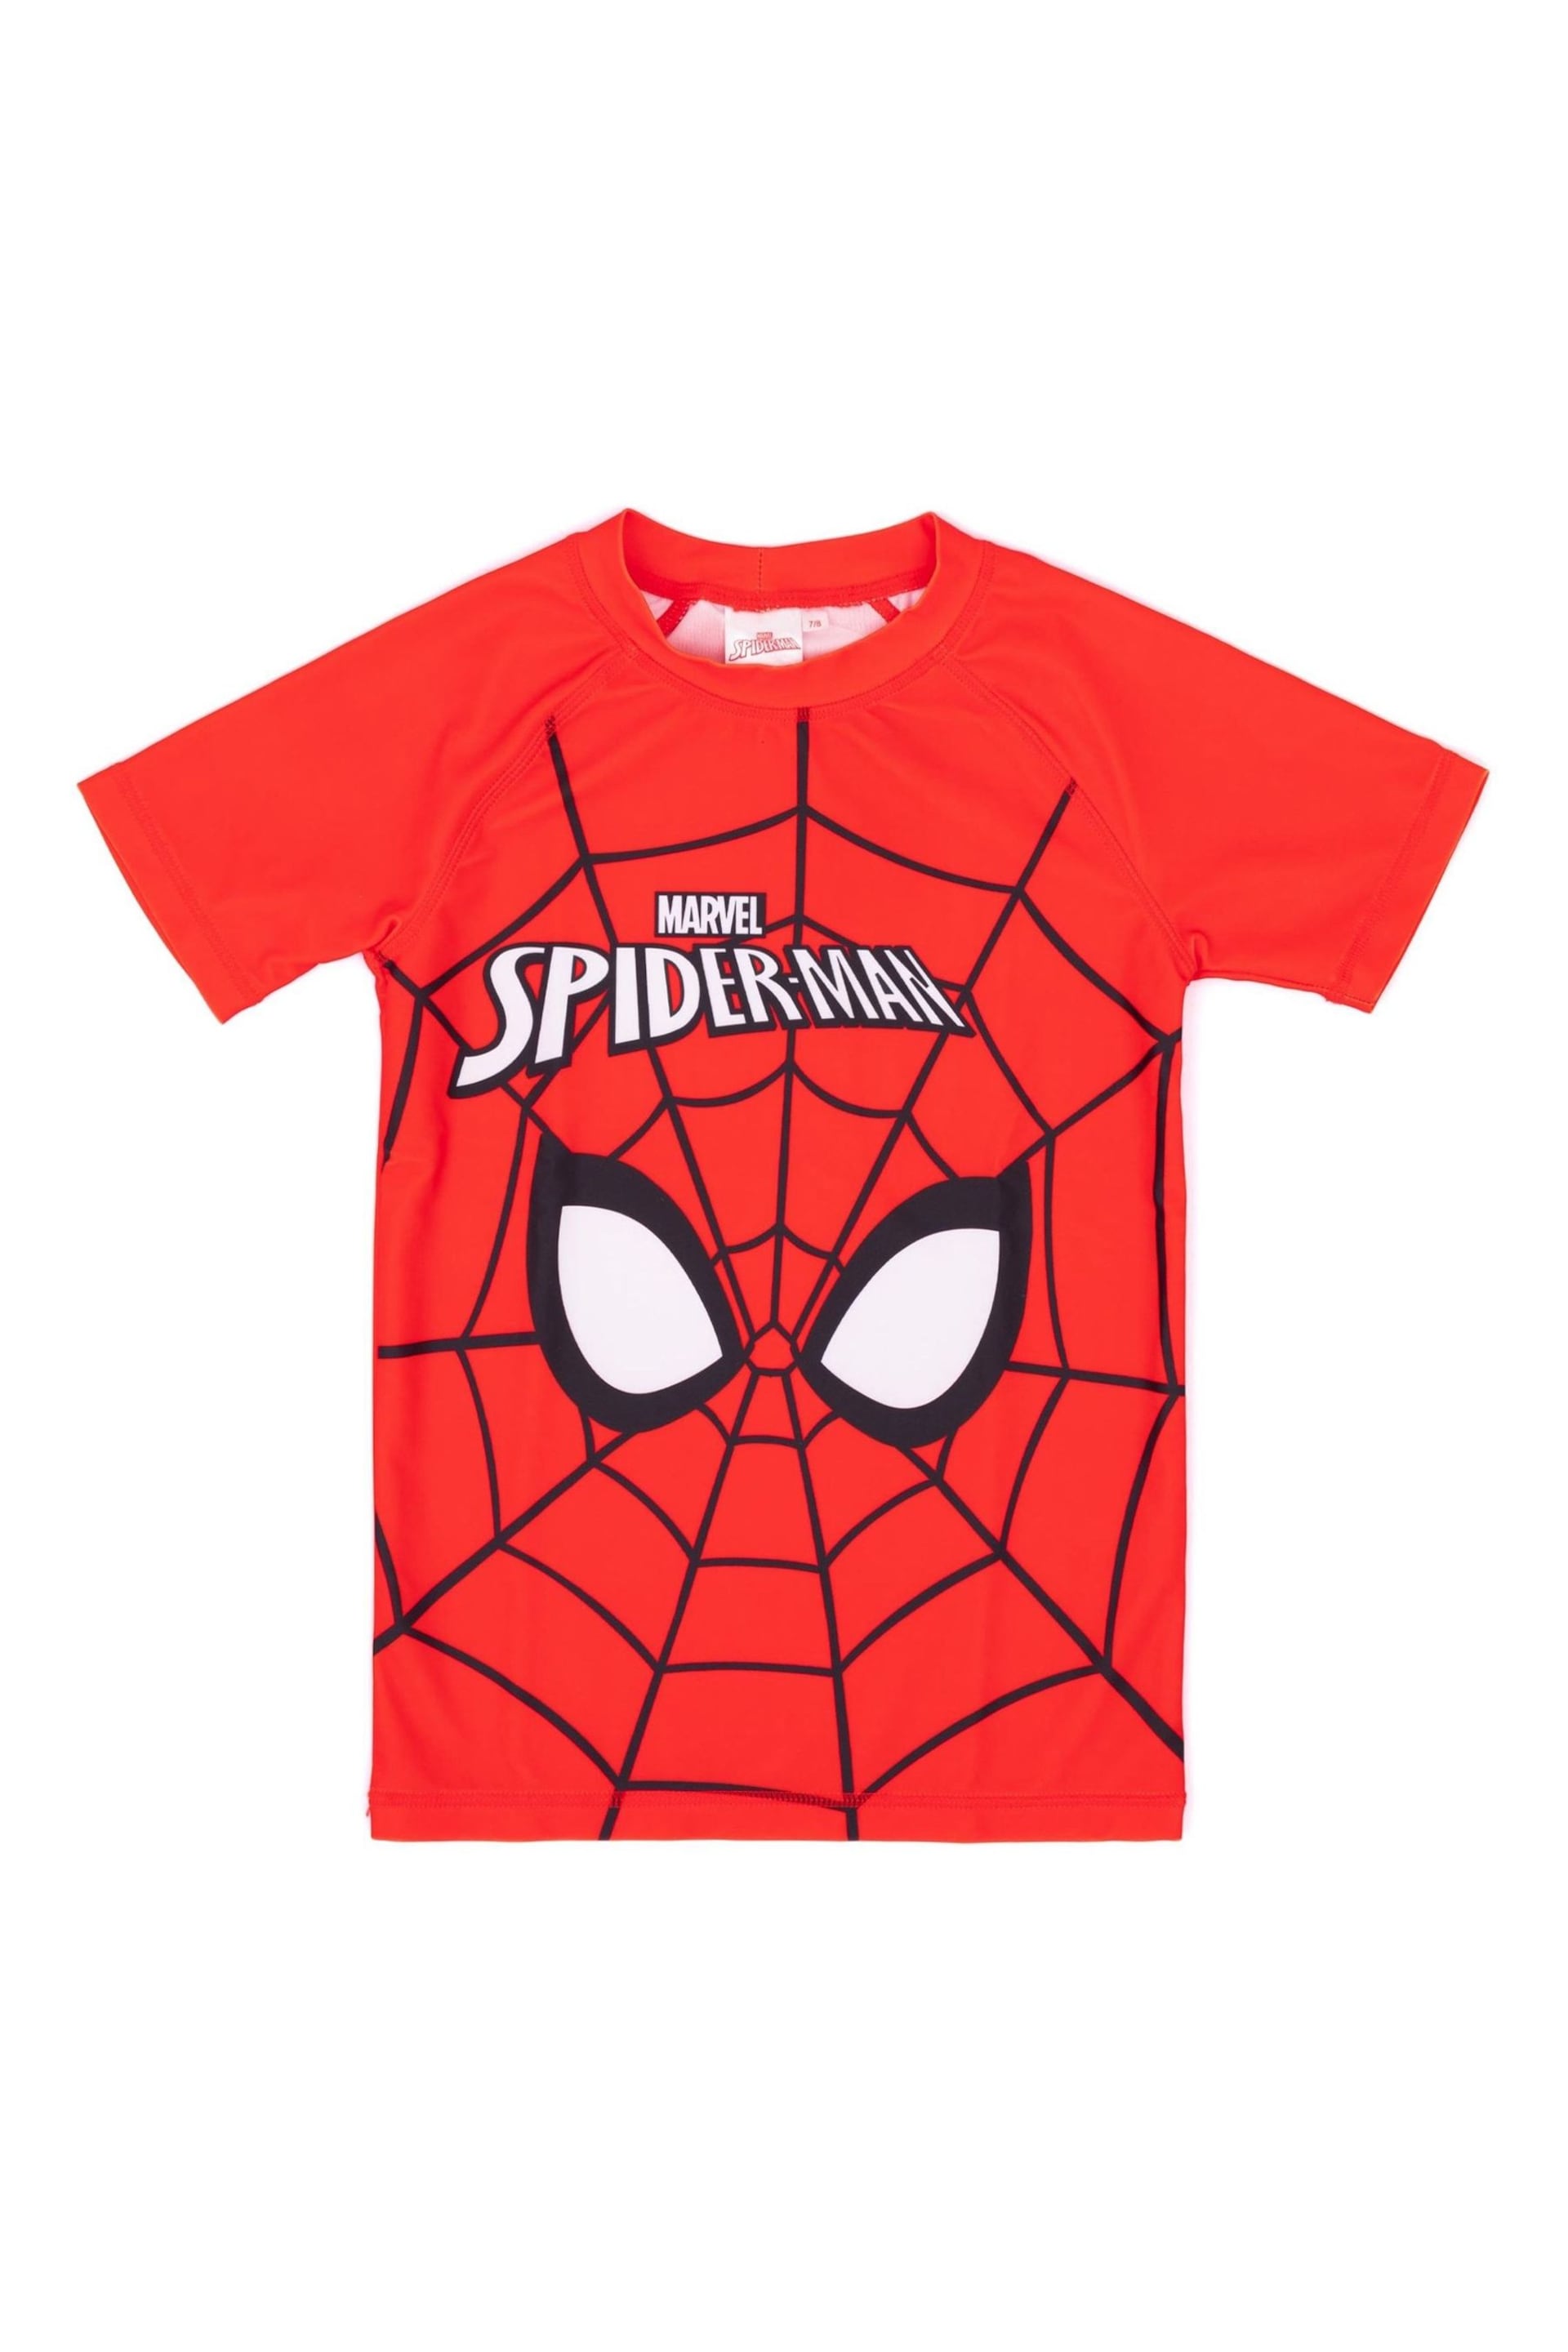 Vanilla Underground Red Spider-Man 2 Piece Swim Set - Image 4 of 5